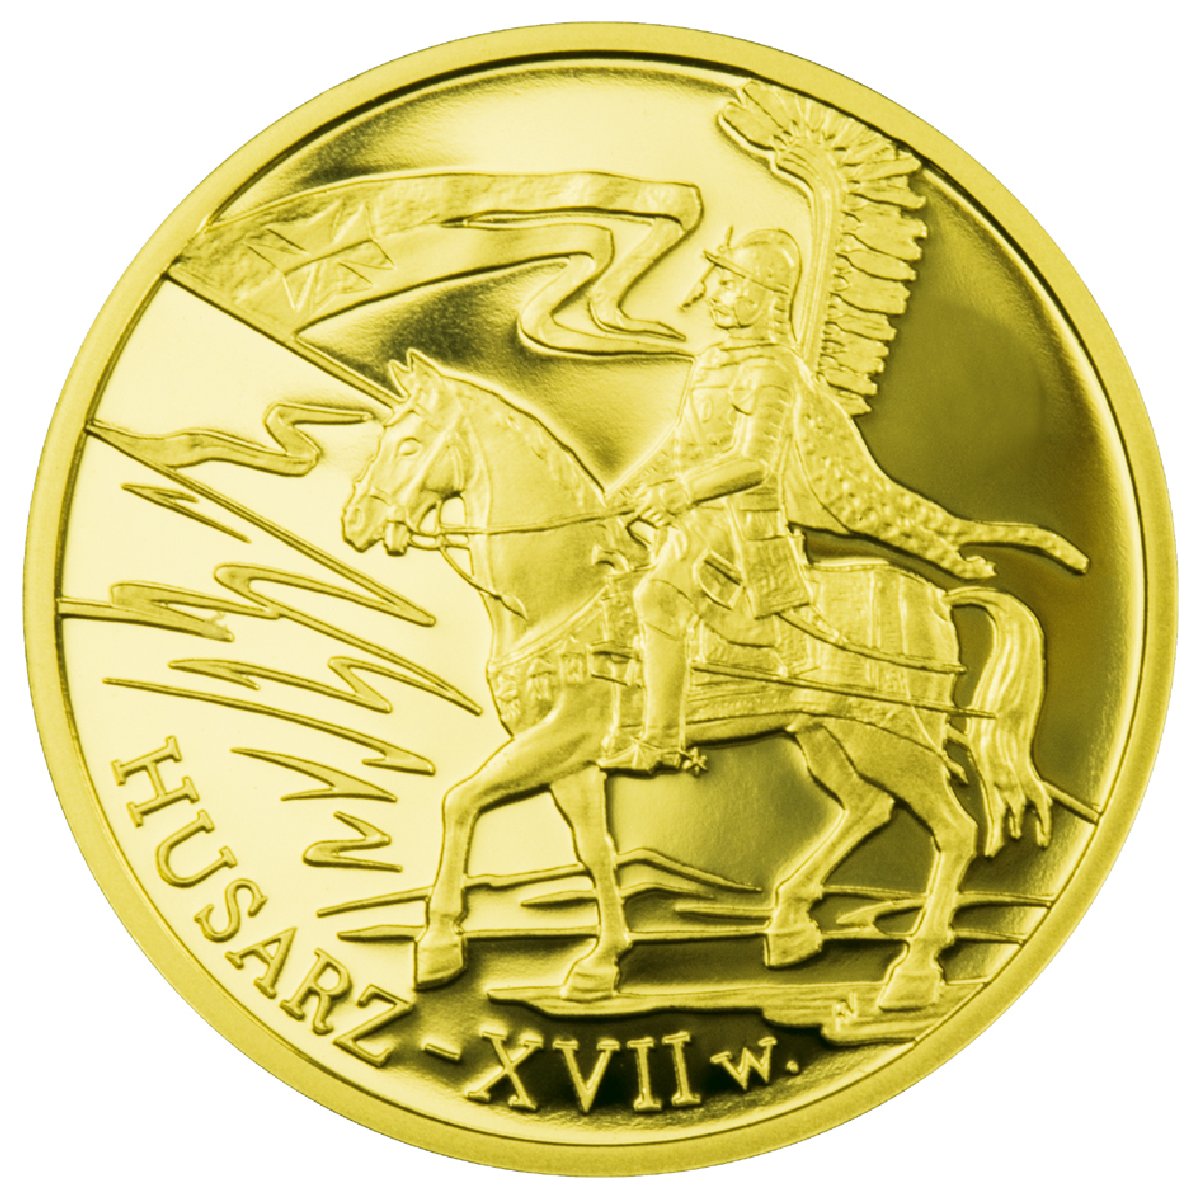 200zł-husarz-xvii-wiek-rewers-monety